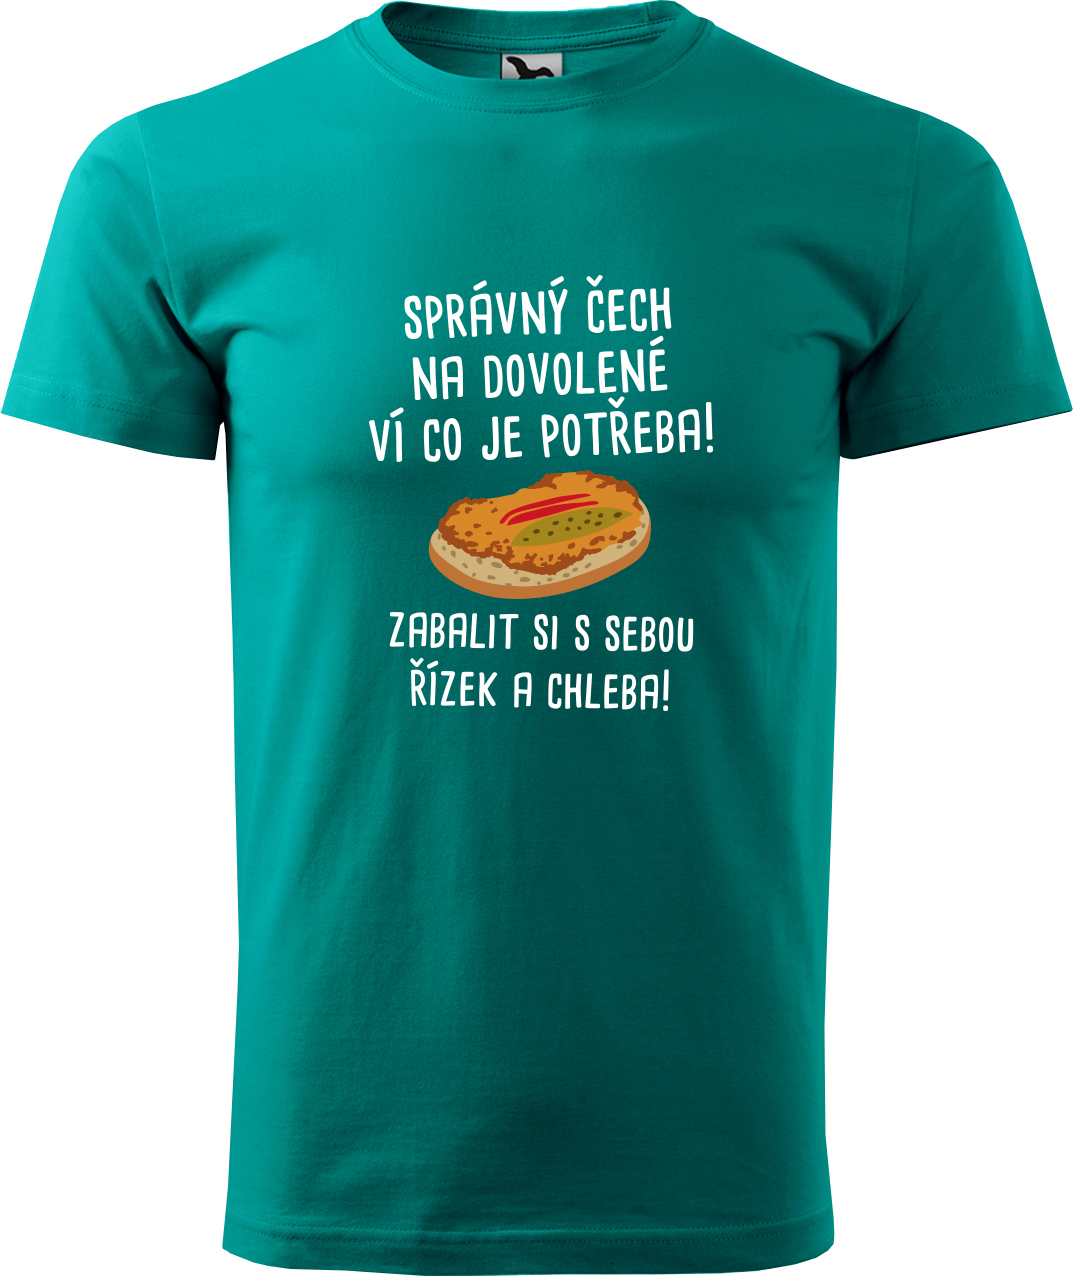 Pánské cestovatelské tričko - Správný Čech na dovolené, ví co je potřeba! Velikost: L, Barva: Emerald (19), Střih: pánský